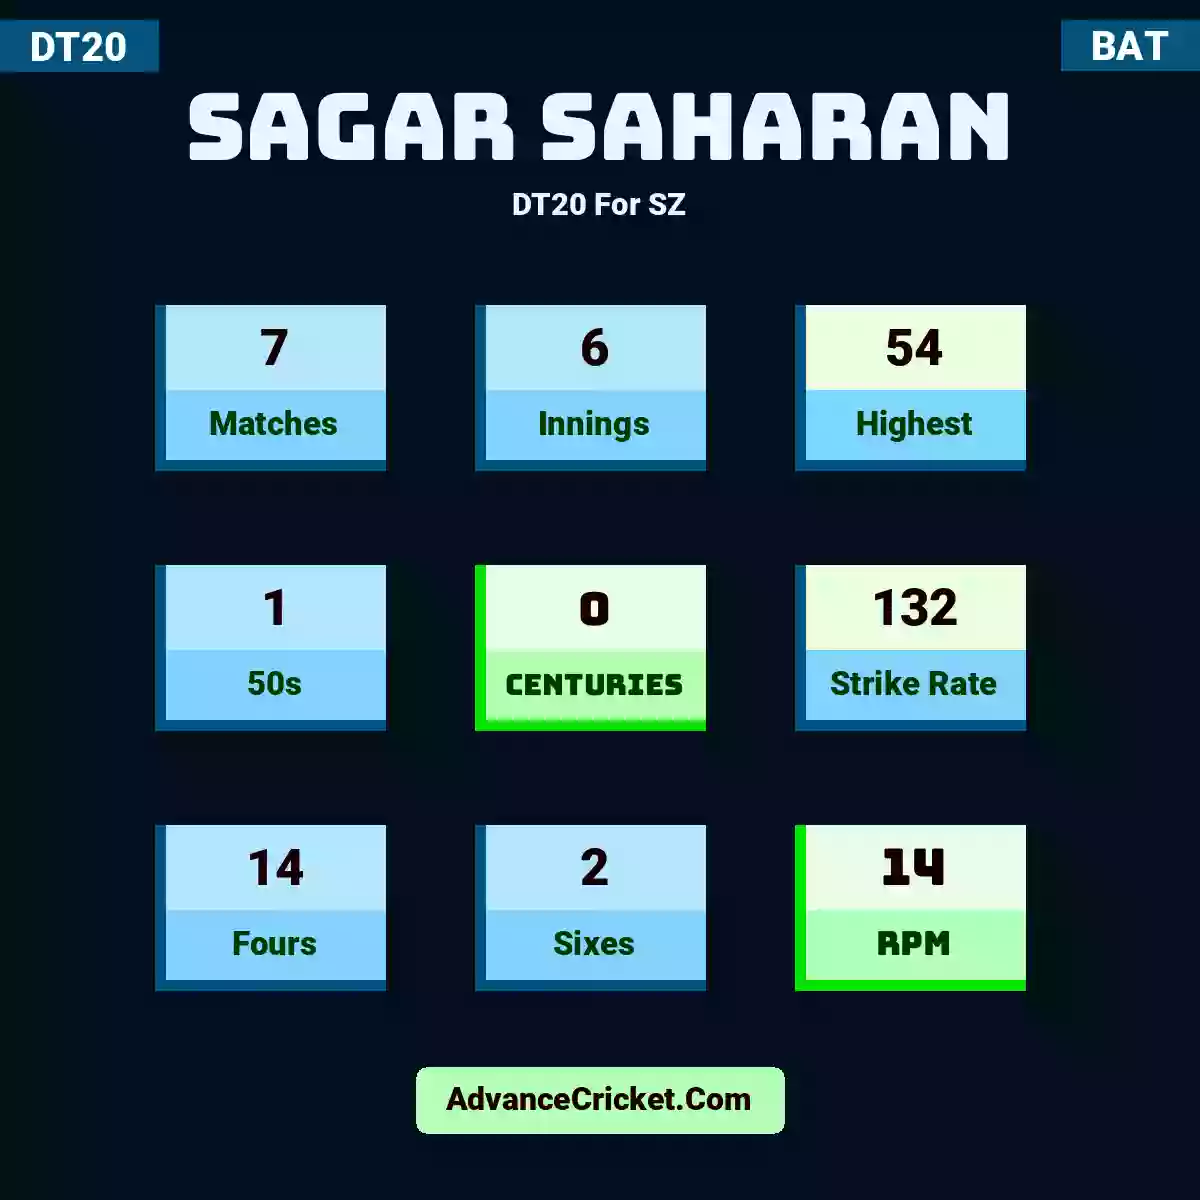 Sagar Saharan DT20  For SZ, Sagar Saharan played 7 matches, scored 54 runs as highest, 1 half-centuries, and 0 centuries, with a strike rate of 132. S.Saharan hit 14 fours and 2 sixes, with an RPM of 14.